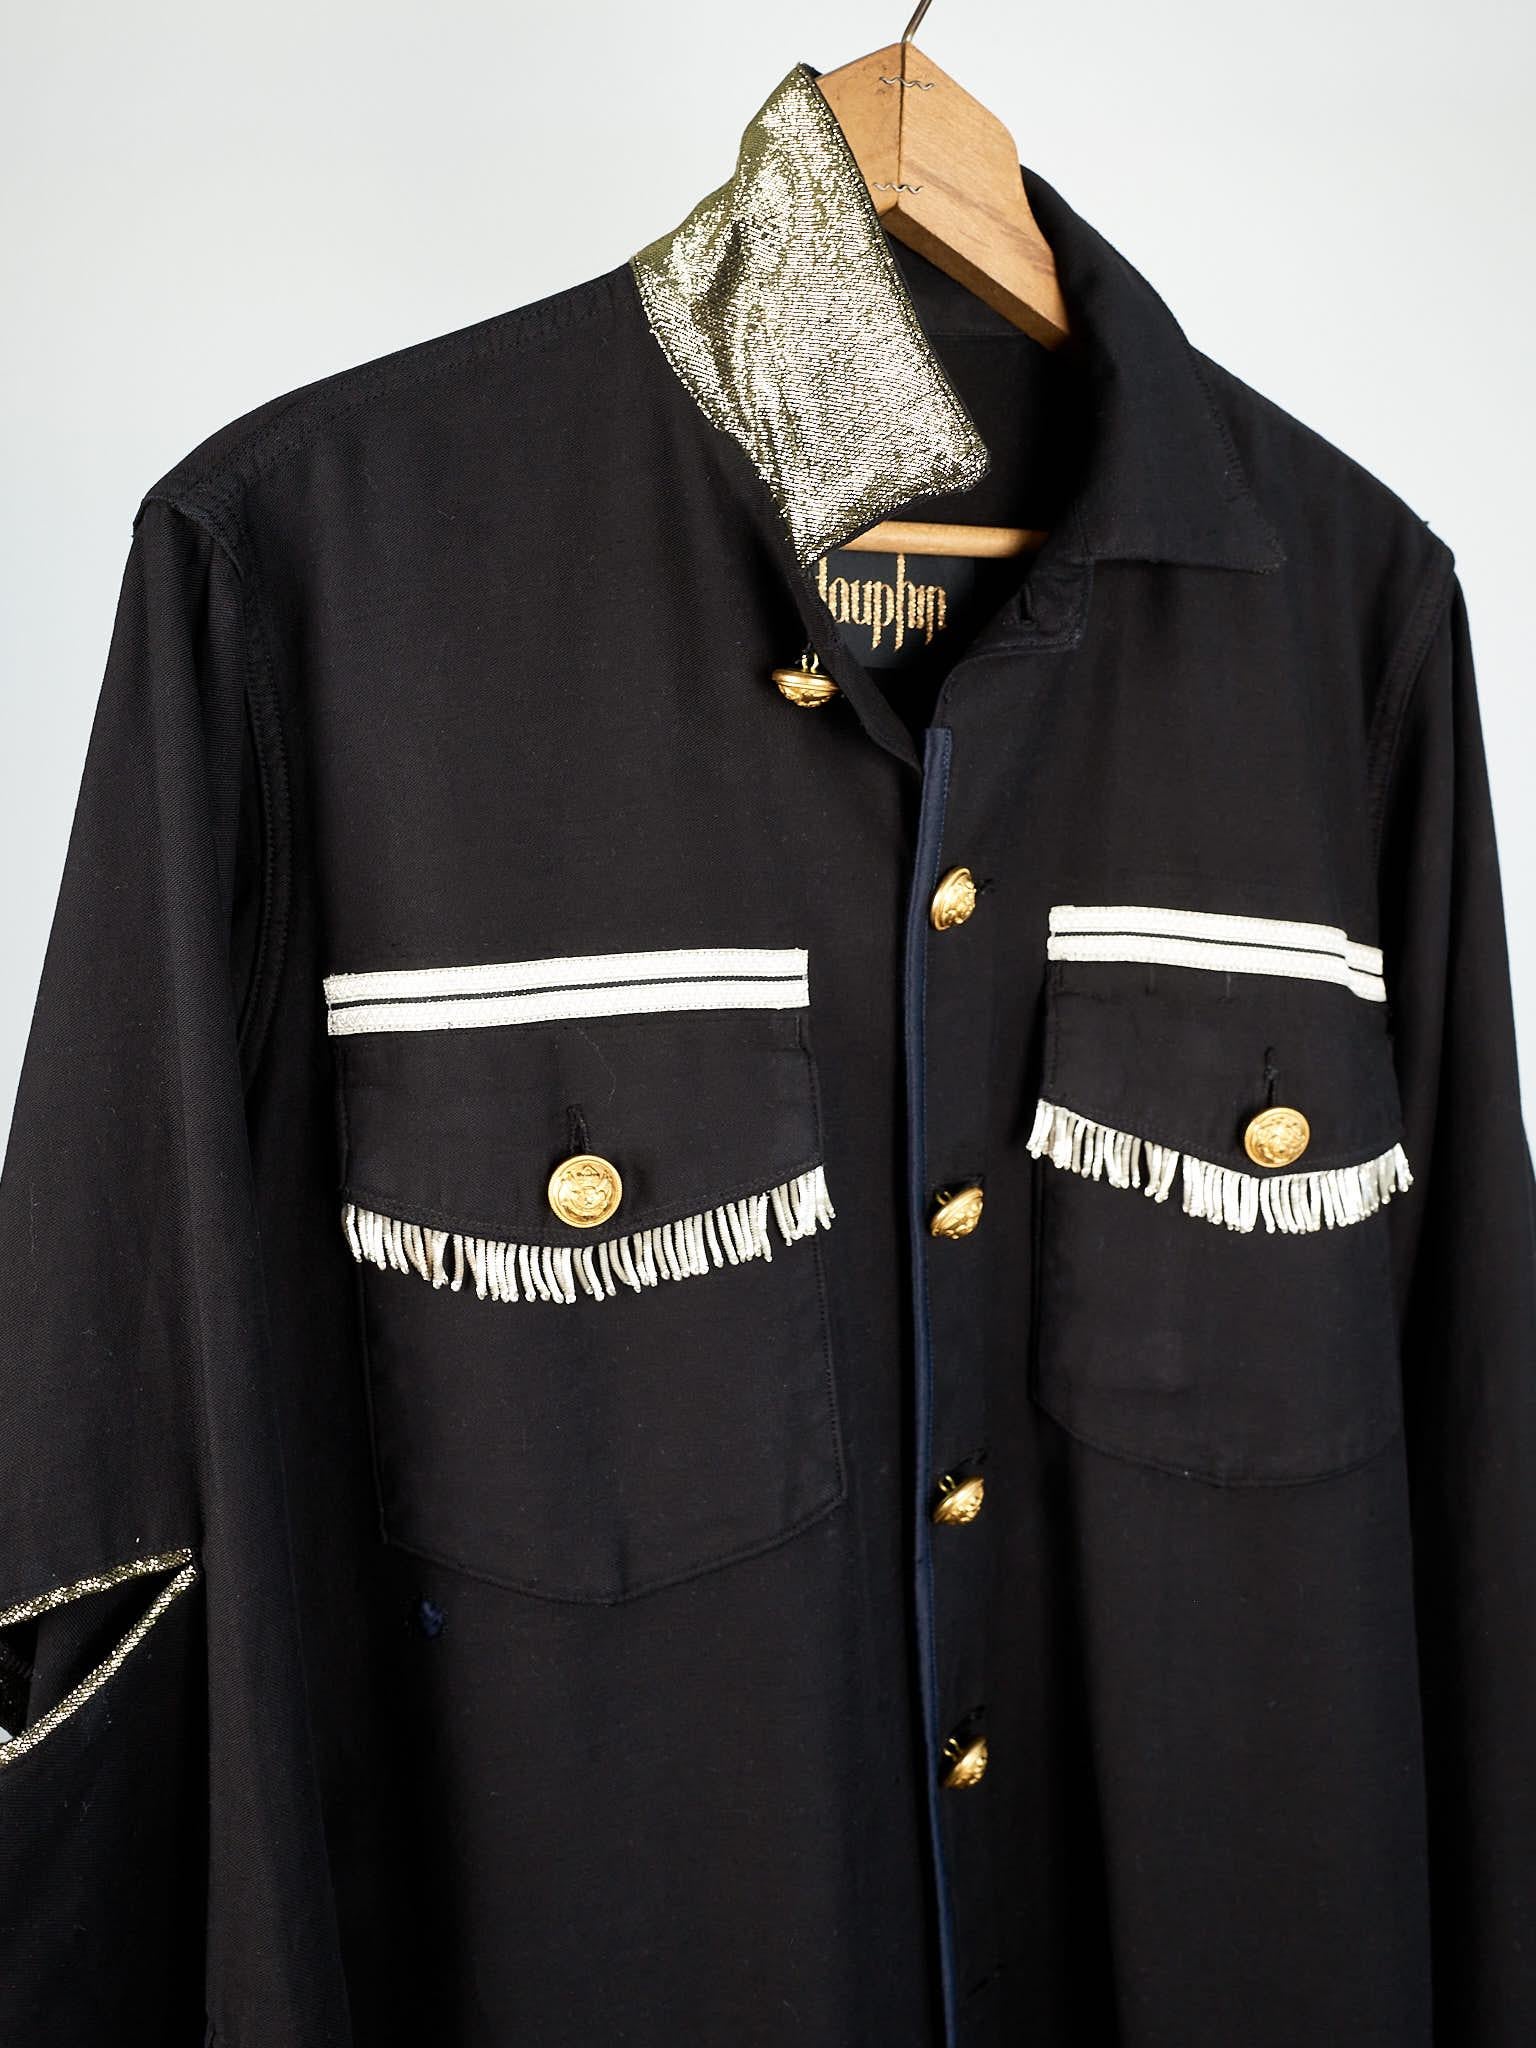 Vintage Jacket in Black Embellished Silver Fringe Braids Gold Buttons Large 1